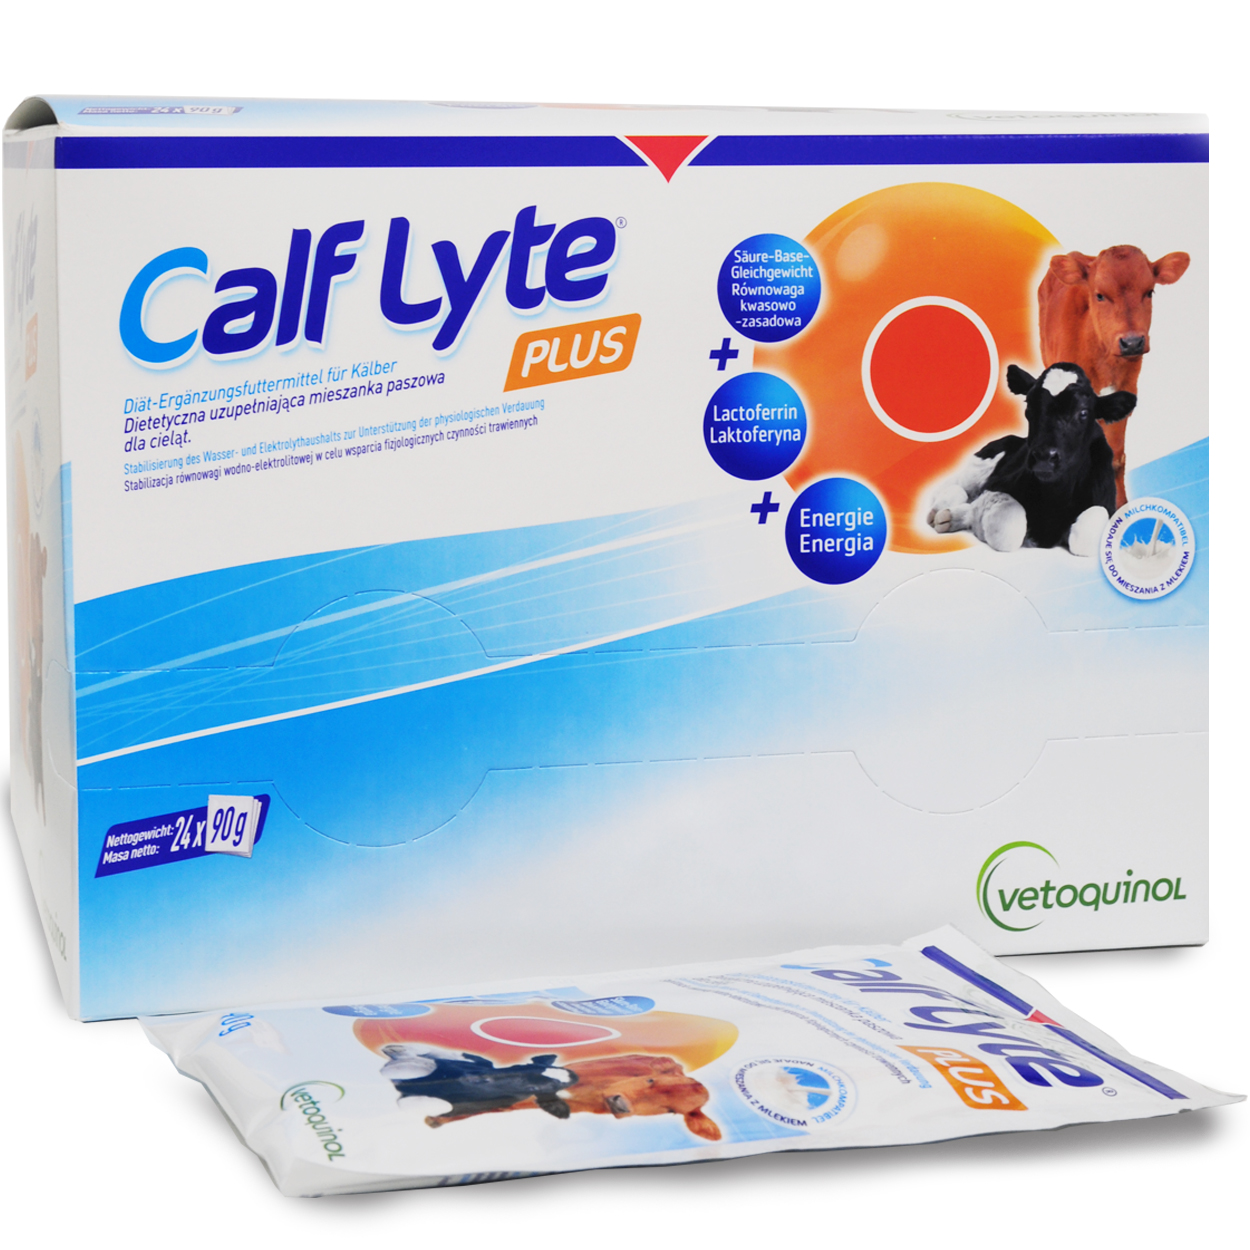 Calf Lyte Plus Beutel 90g | preiswert bestellen jetzt